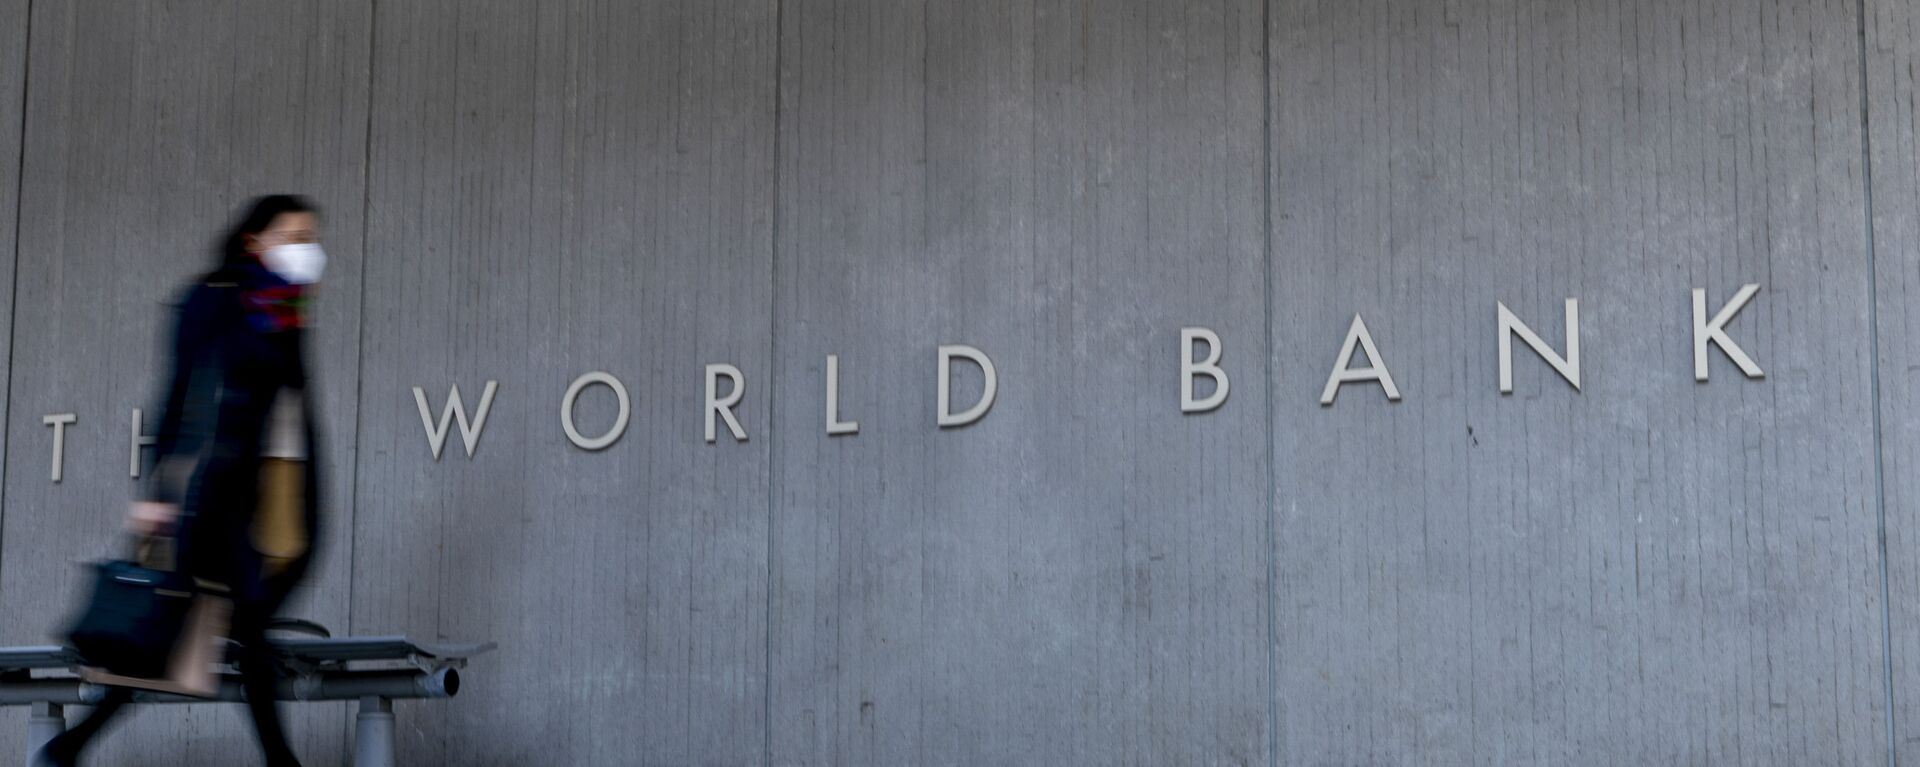 მსოფლიო ბანკი ვაშინგტონში - Sputnik საქართველო, 1920, 12.05.2021